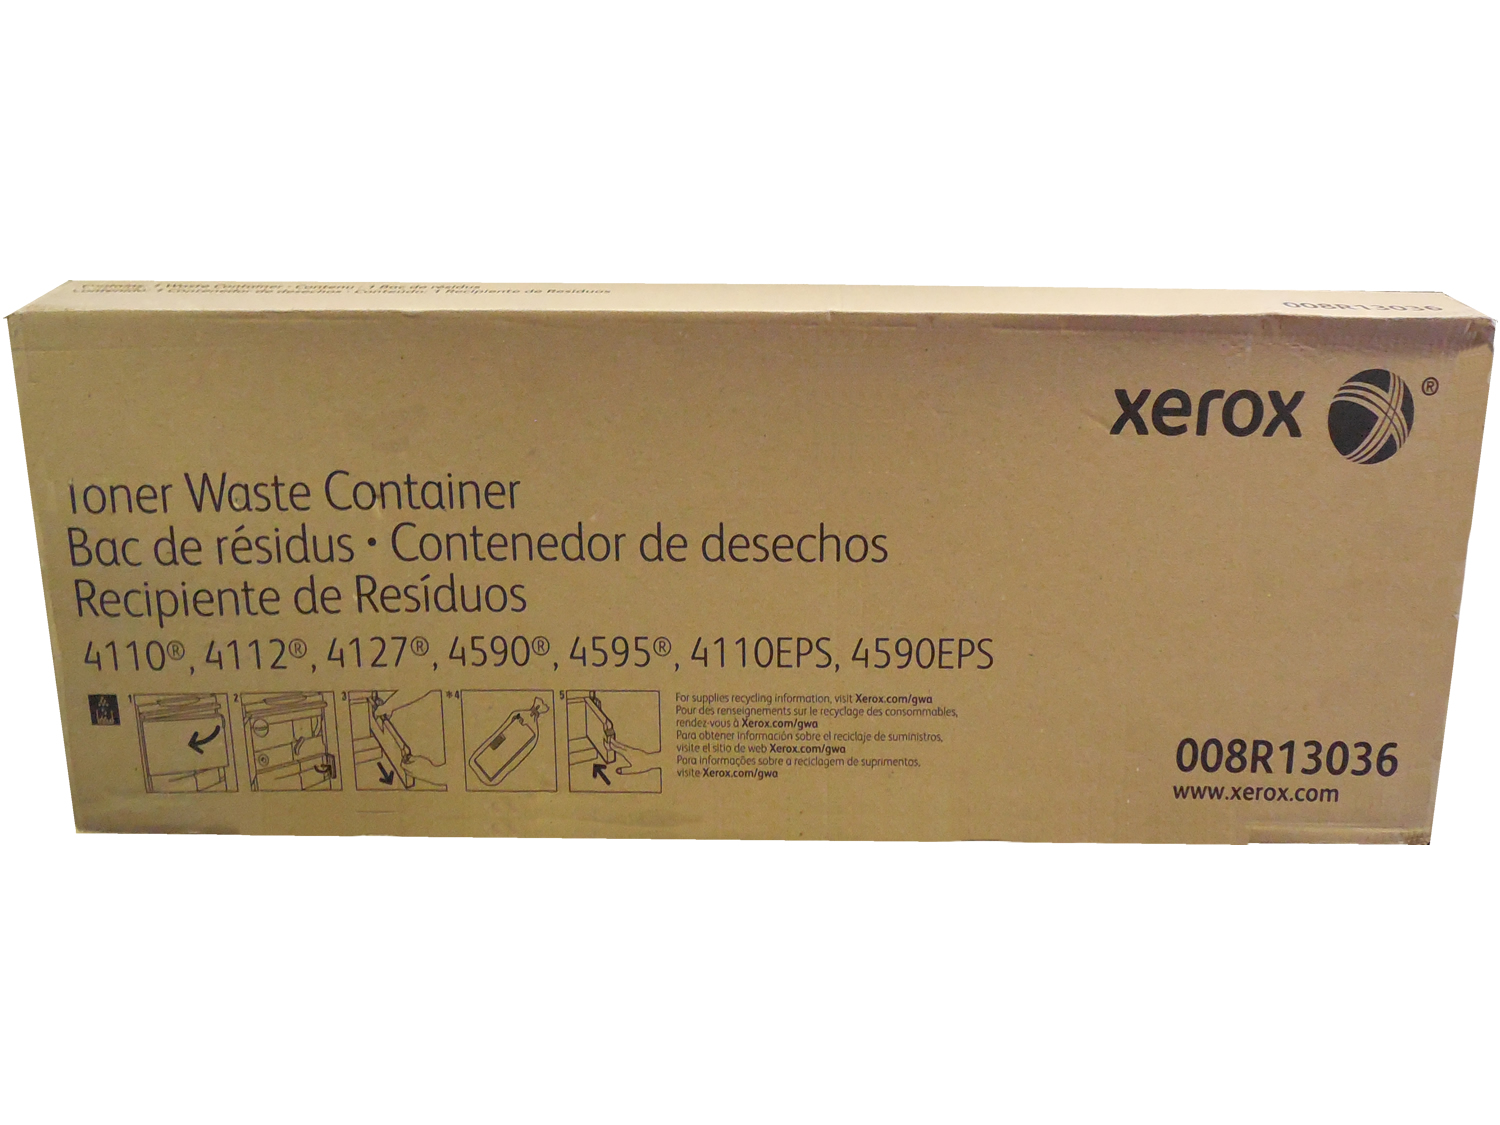 Original Xerox 8R13036 Waste Toner Container (008R13036)